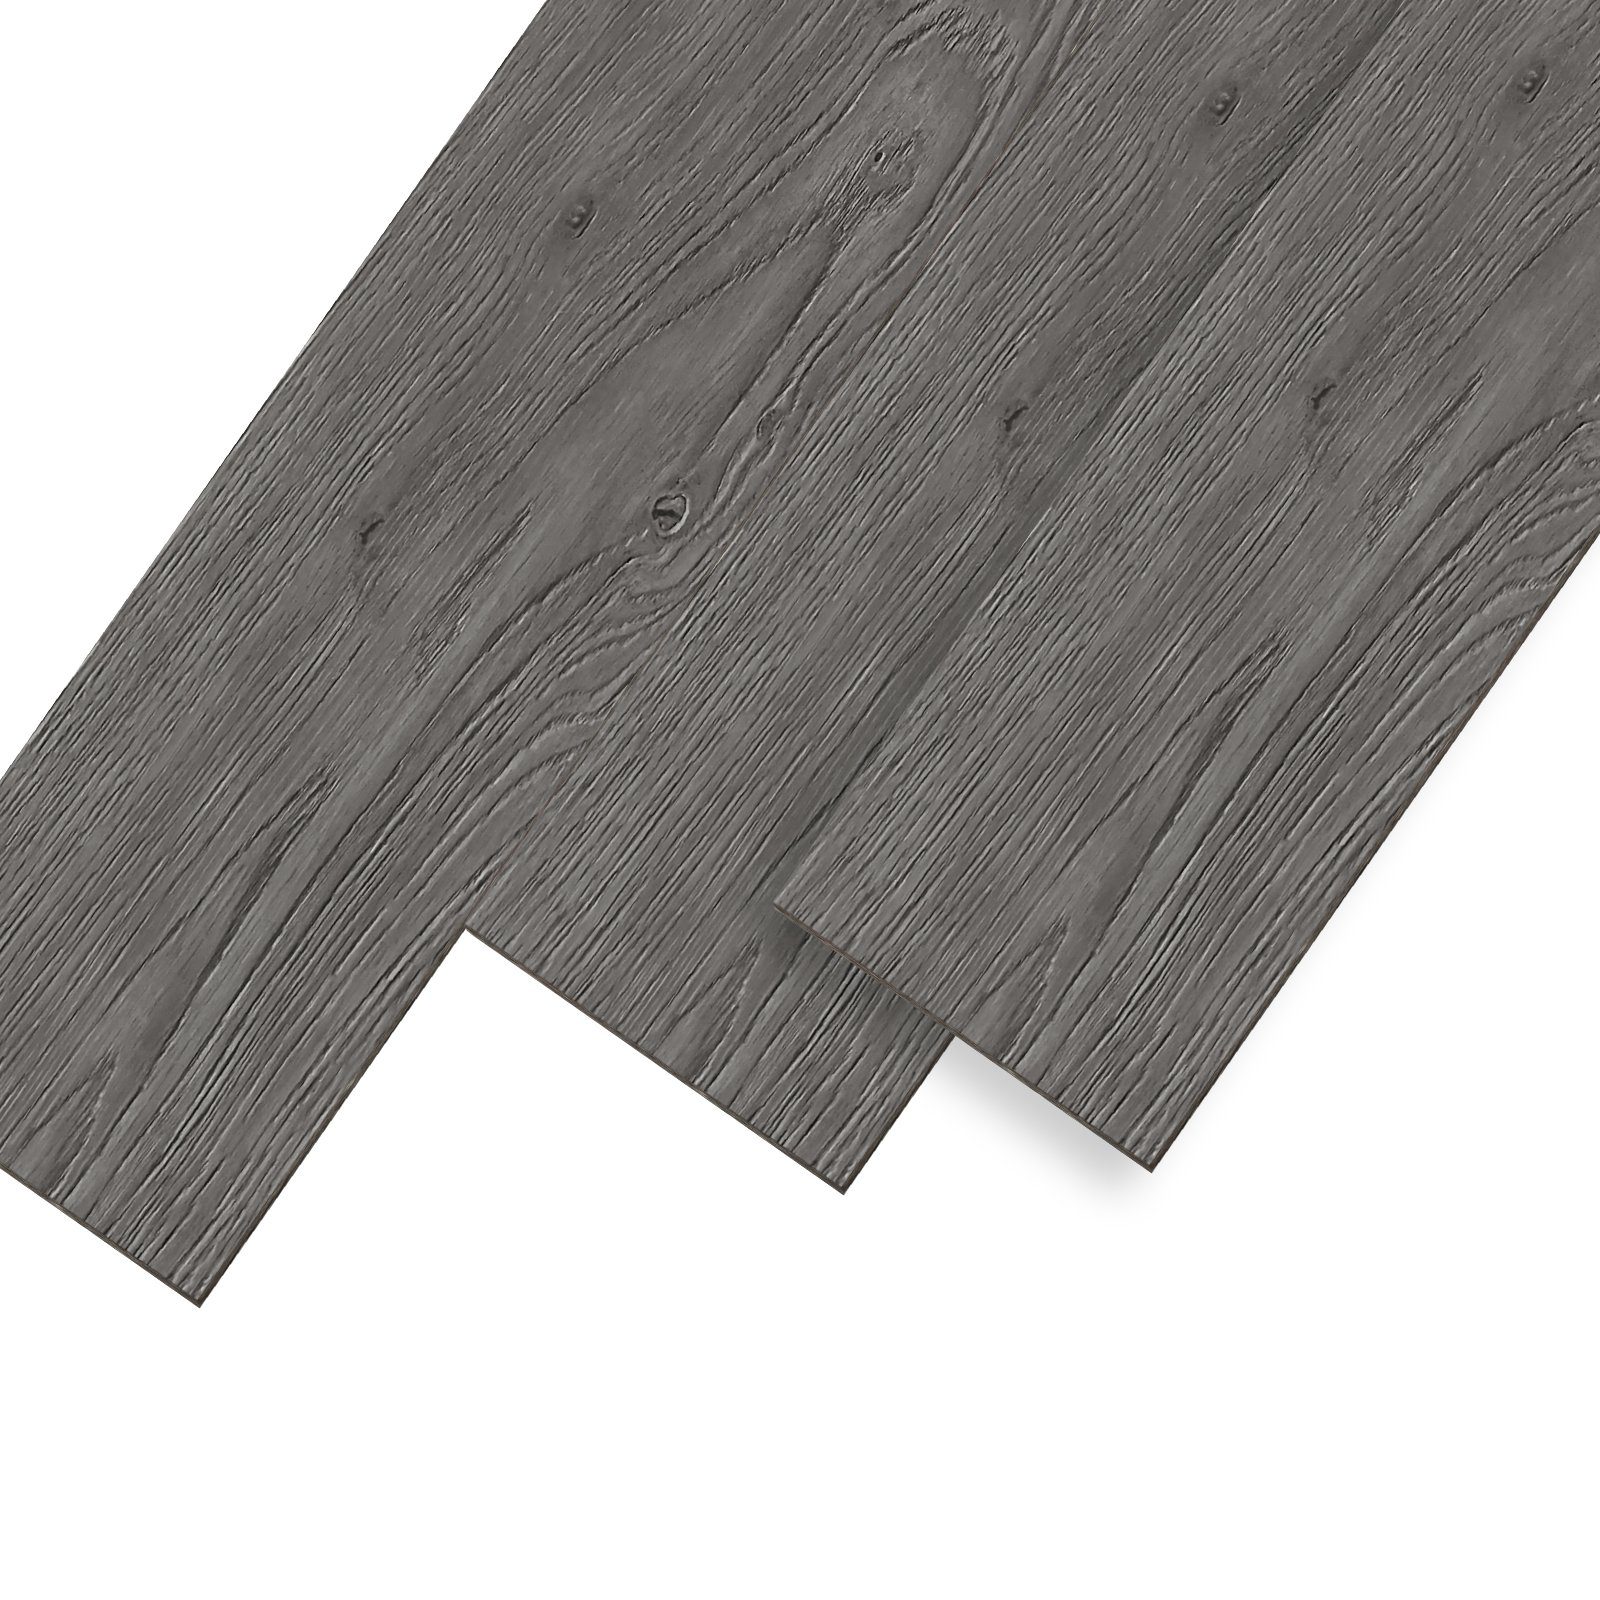 UISEBRT Vinylboden PVC Bodenbelag Selbstklebend Holz-Optik Dekor-Dielen Night Oak